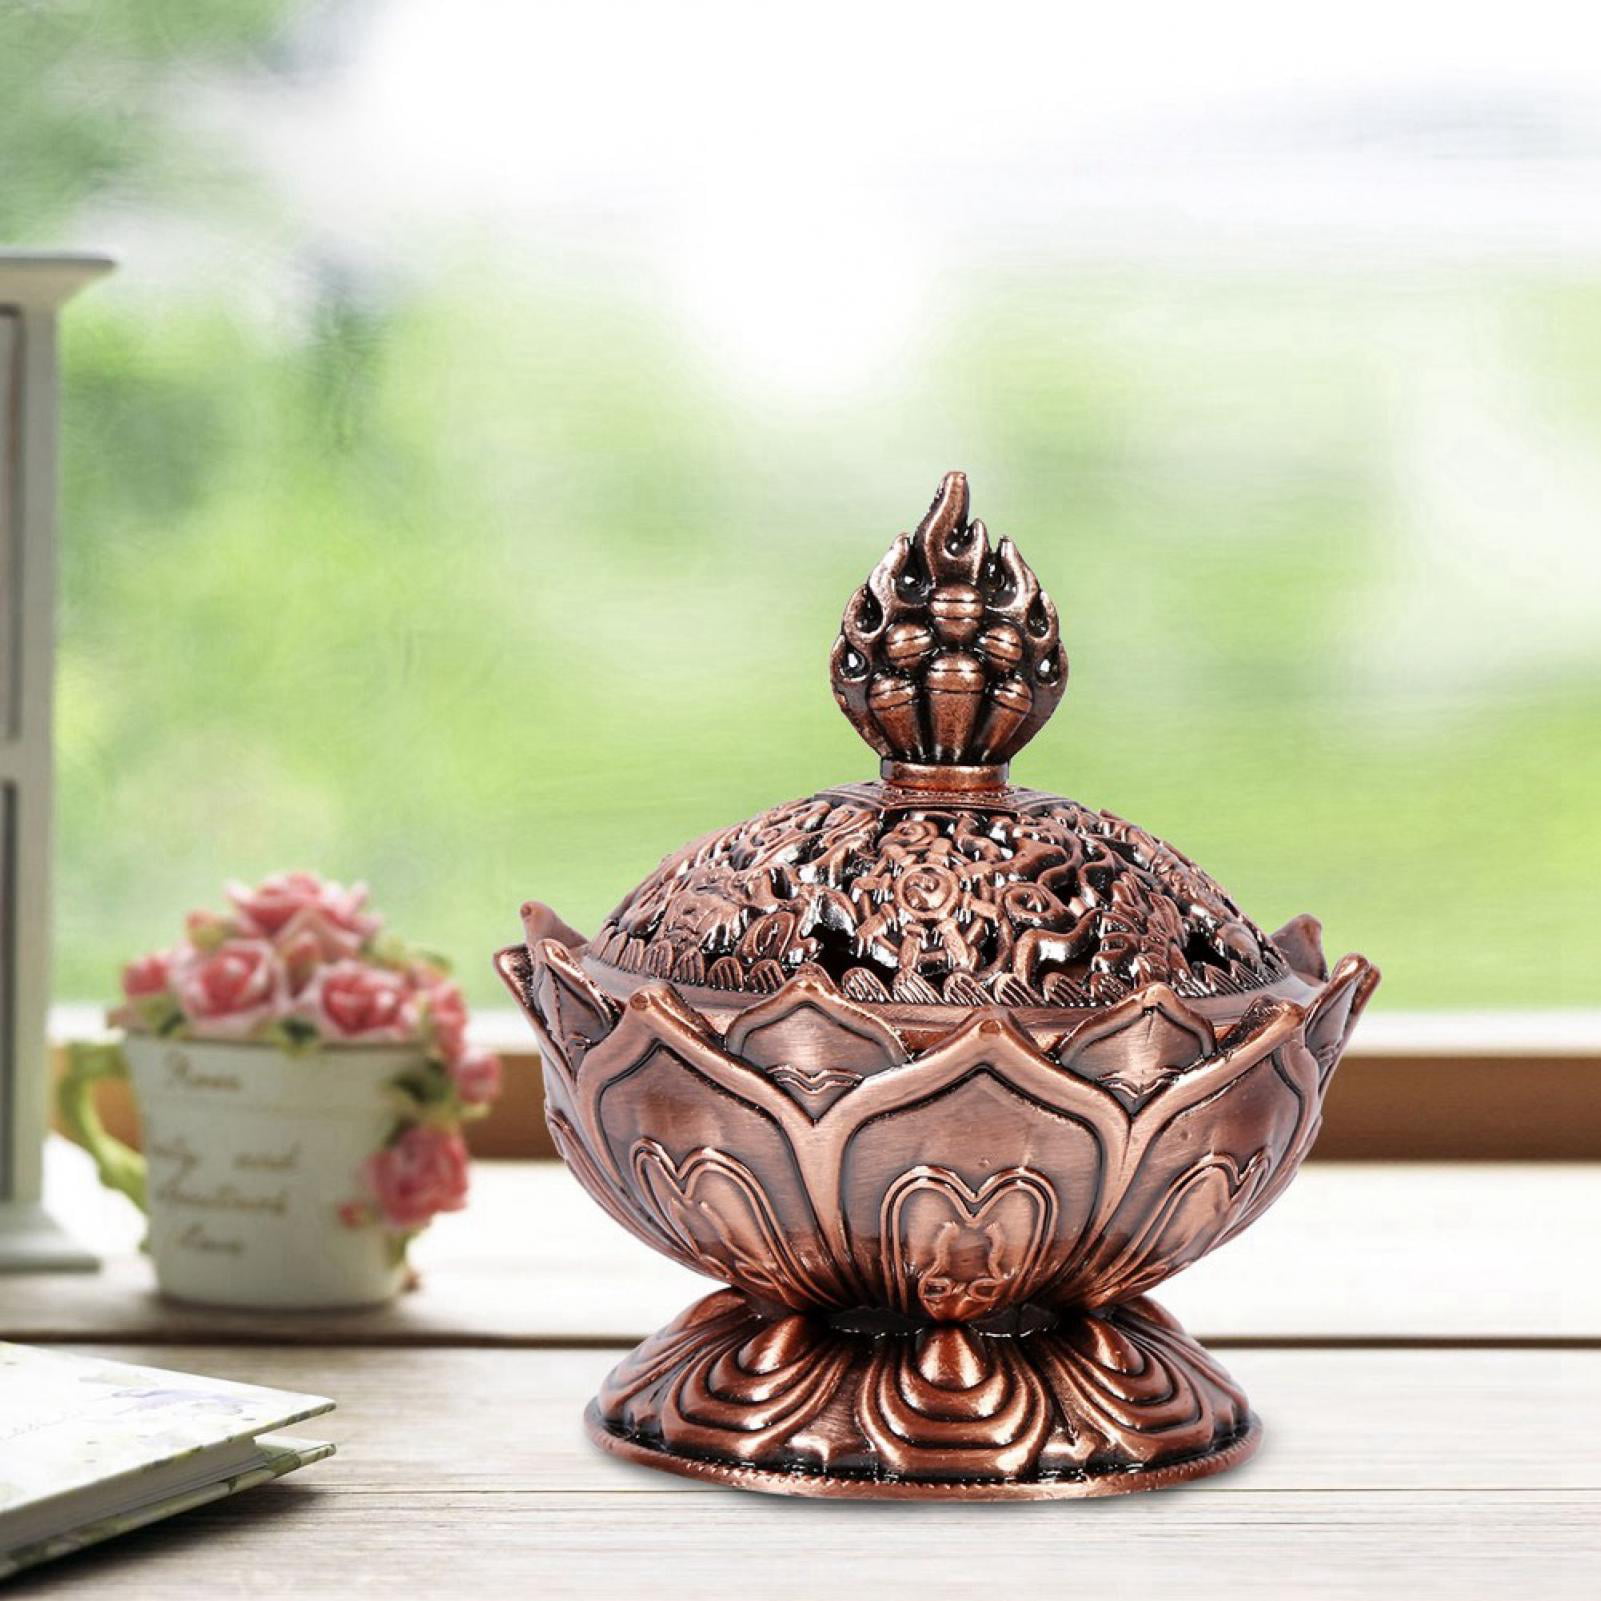 Incense Burner Vintage Lotus Shape Alloy Censer Incense Cone Holder Ornaments Crafts Home Room Decor  